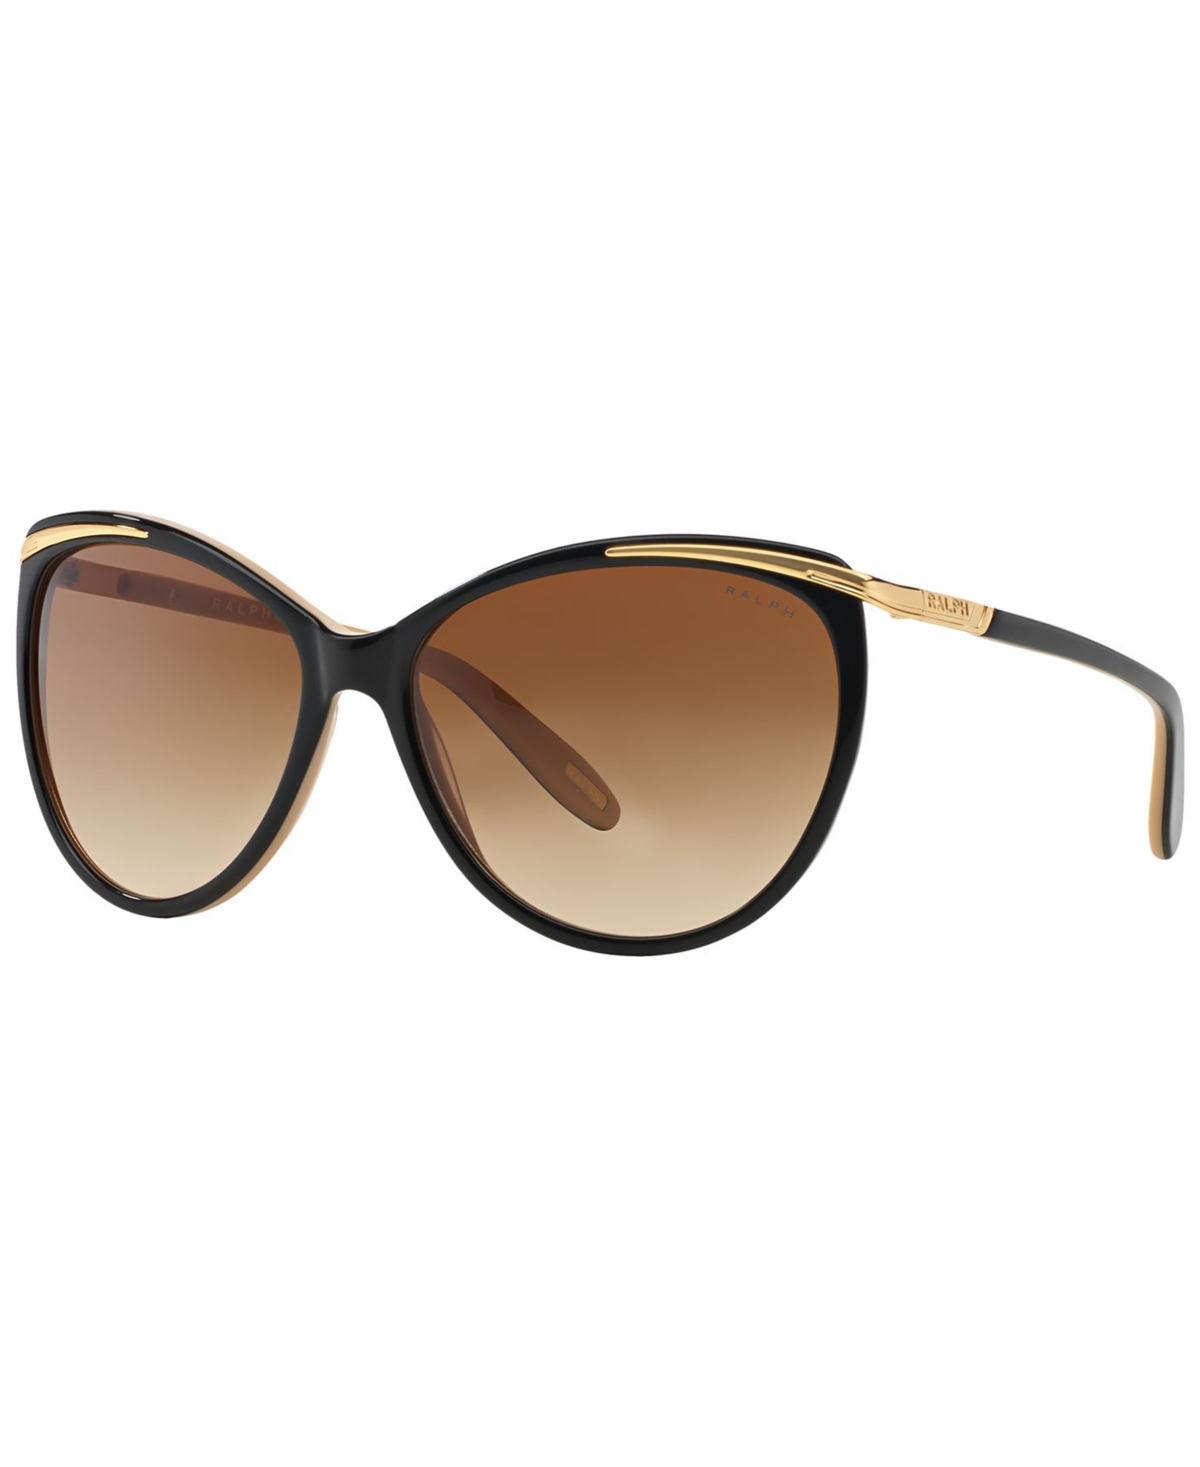 Ralph Lauren Ralph Women's Sunglasses, Ra5150 In Black,nude,brown Gradient